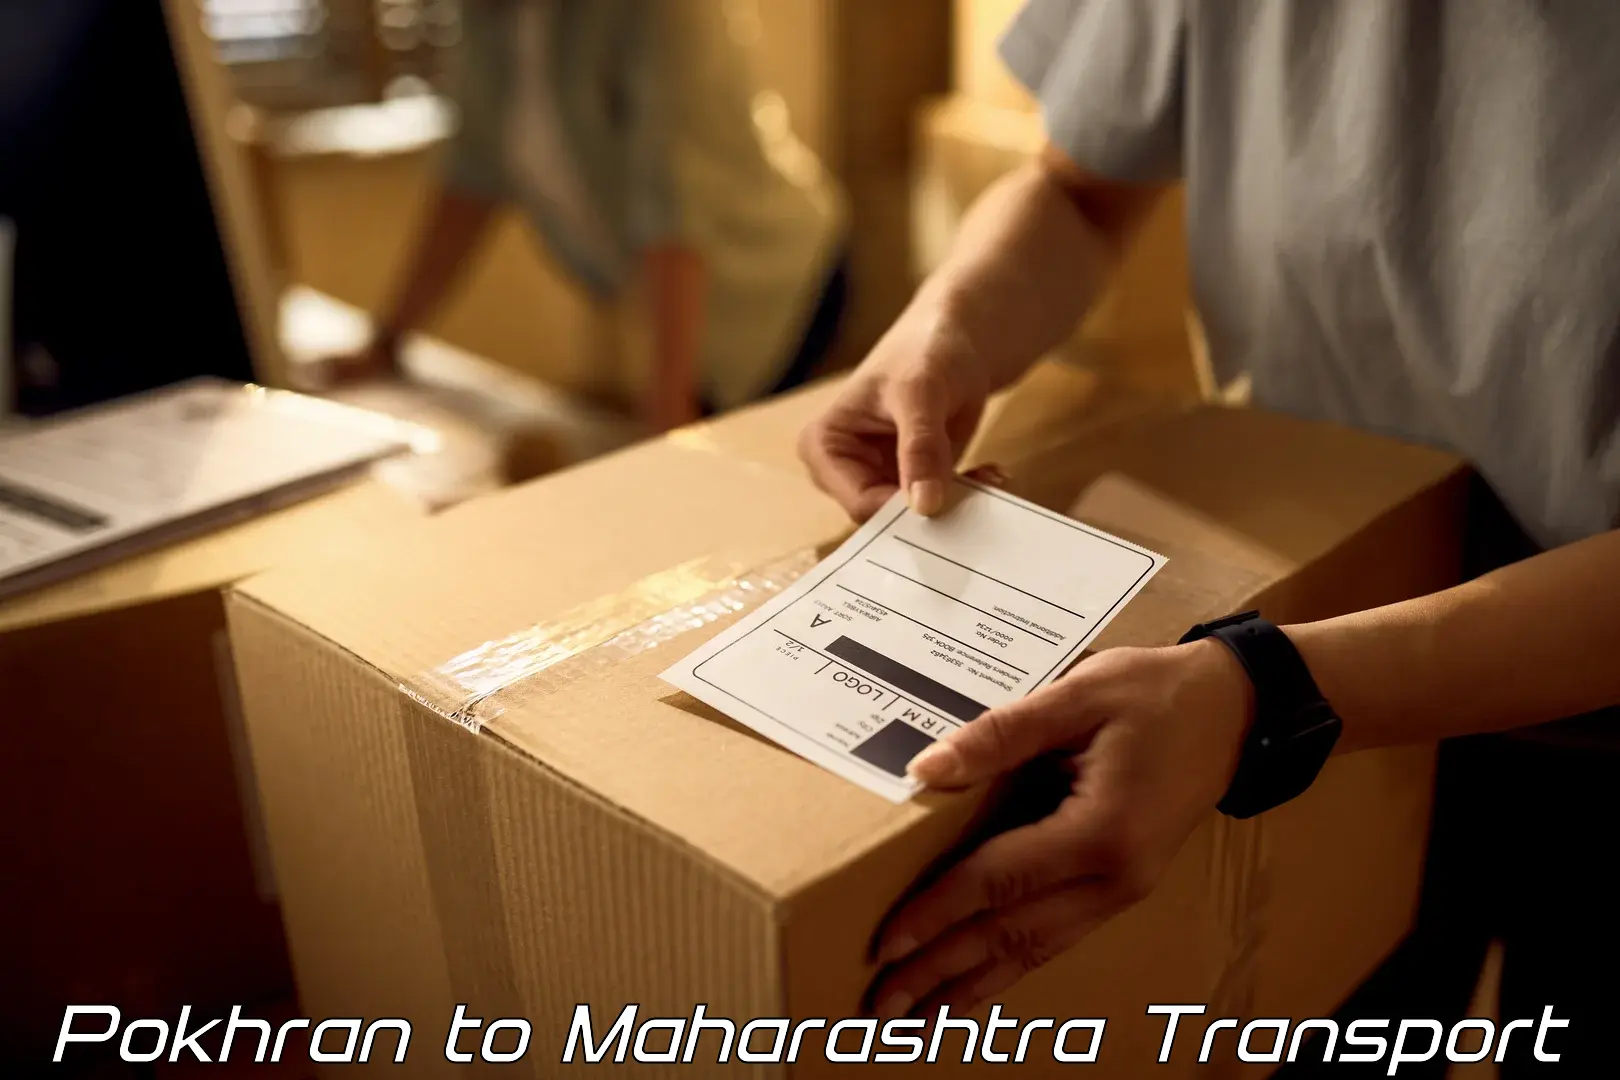 Furniture transport service Pokhran to Maharashtra